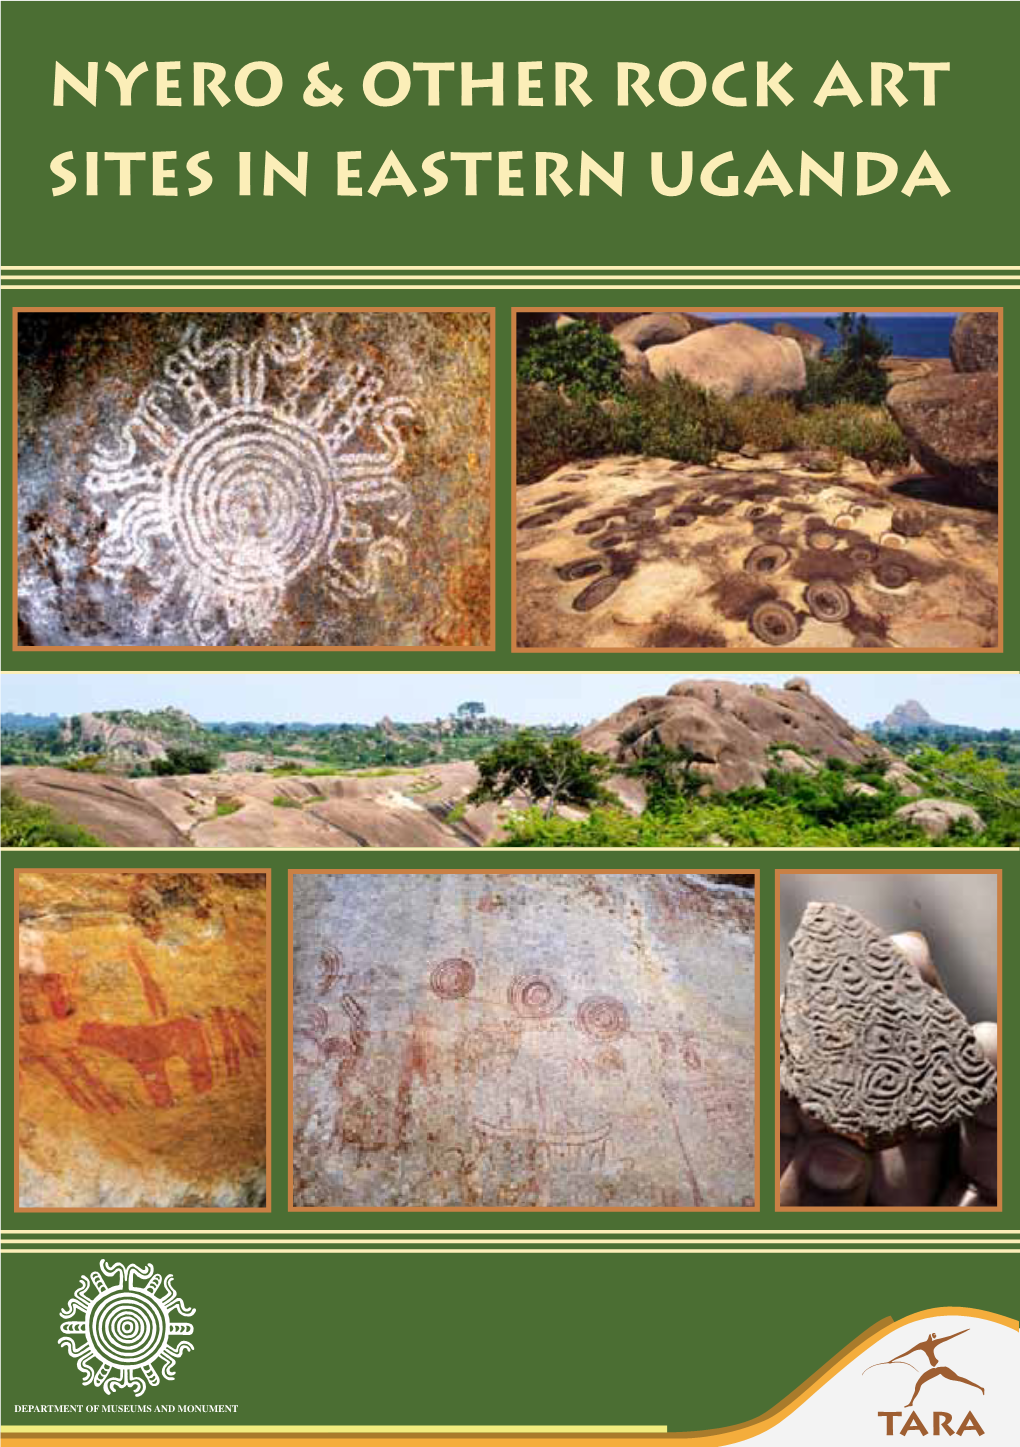 Nyero & Other Rock Art Sites in Eastern Uganda